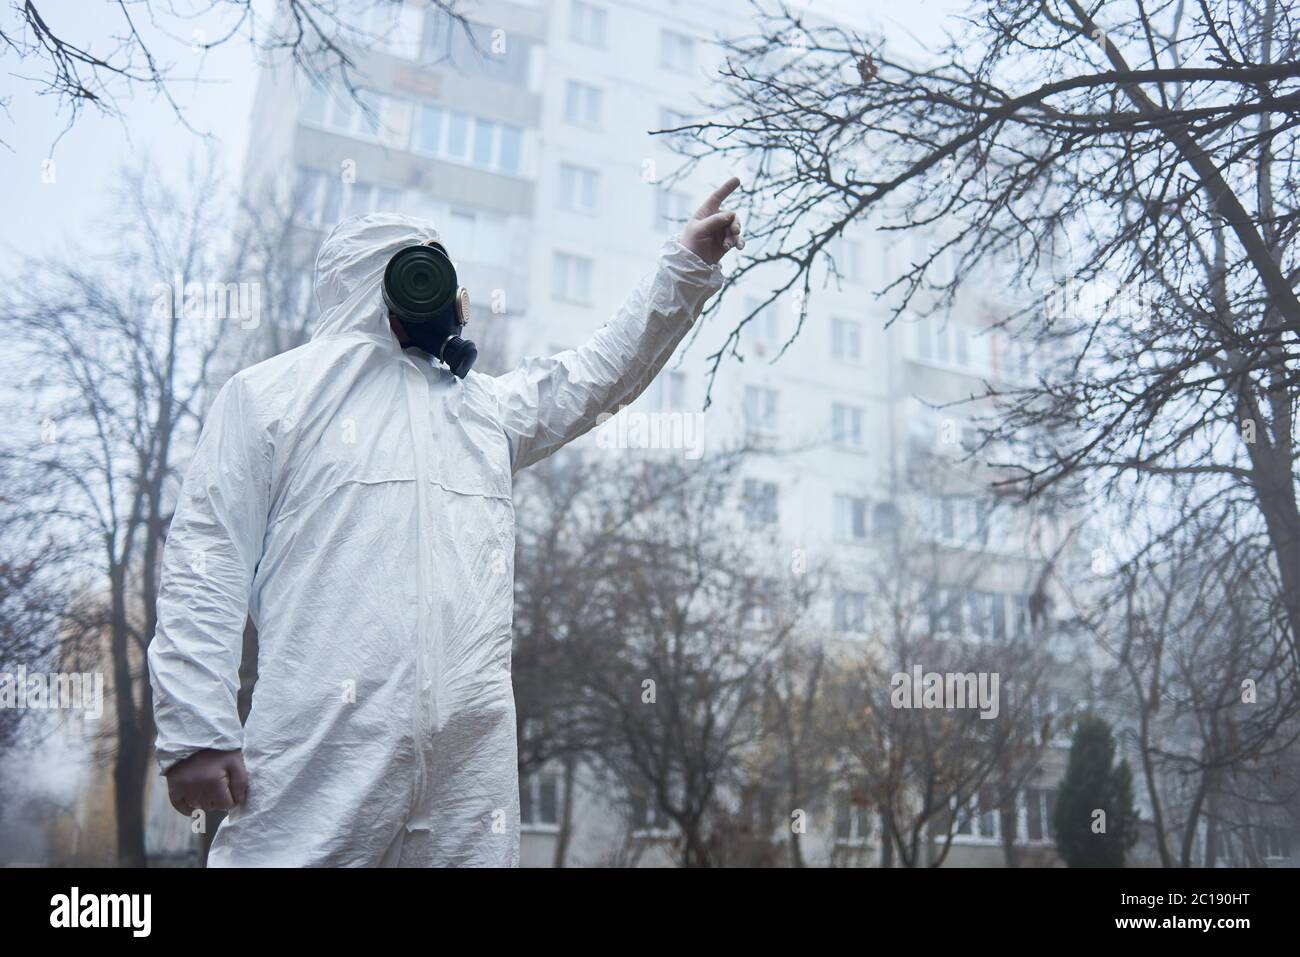 Wissenschaftler zeigt mit dem Finger auf, zwischen Herbstbäumen stehend. Mann in Gasmaske und Schutzkostüm posiert in leerer Stadt in der Nähe von Gebäuden. Konzept der städtischen Verschmutzung, feindliche Umwelt, Nebel. Stockfoto